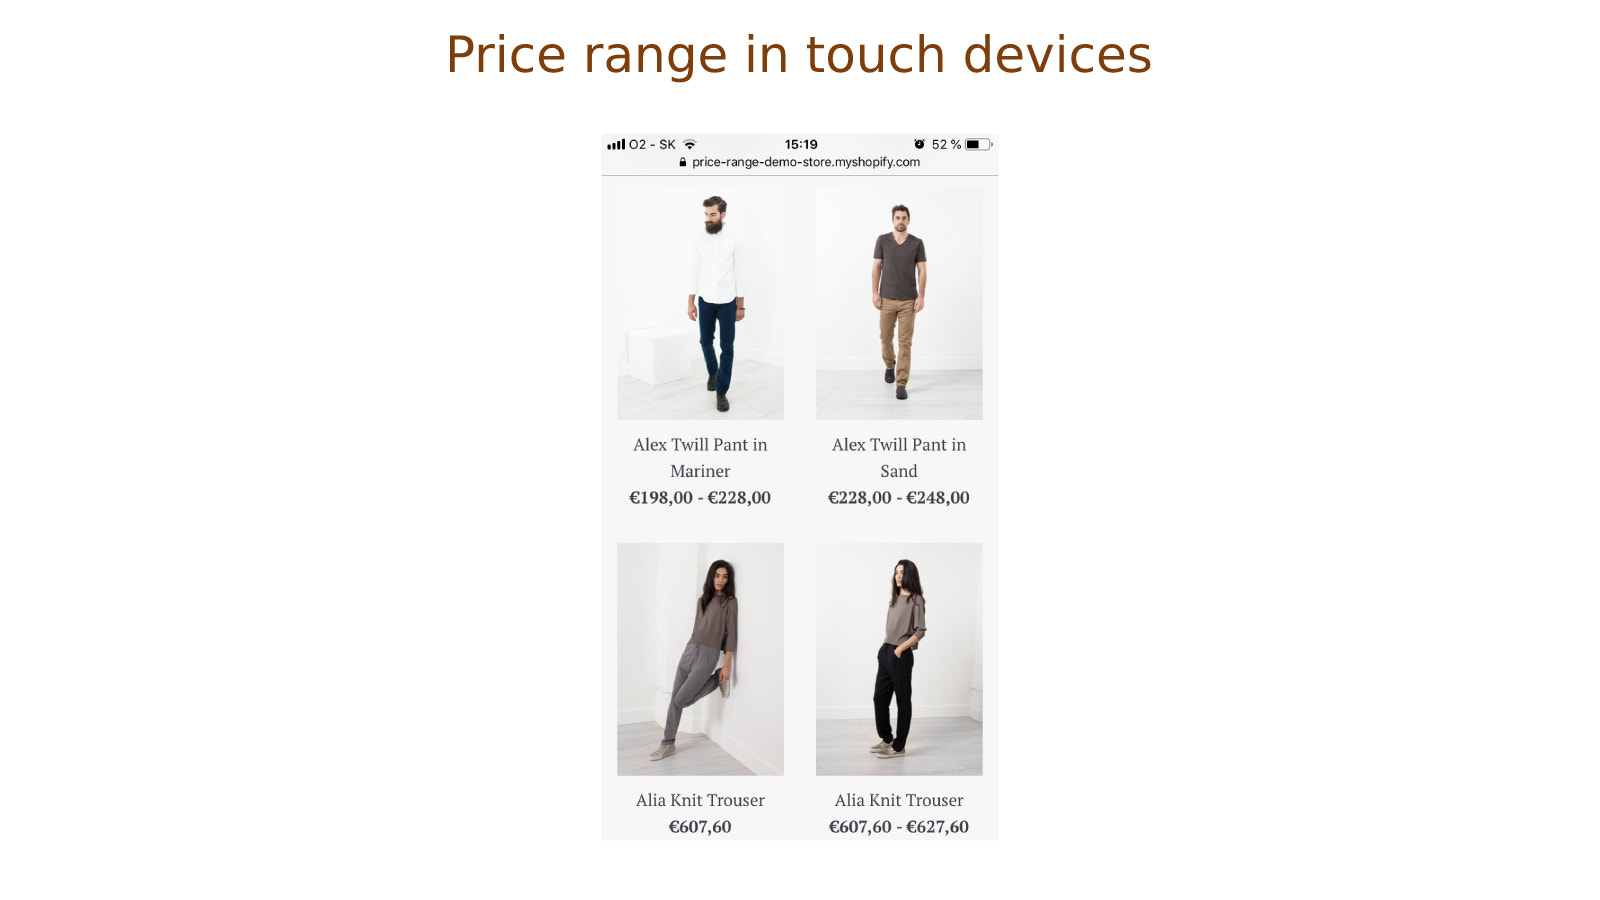 Prijsbereiken voor producten op touch-apparaten